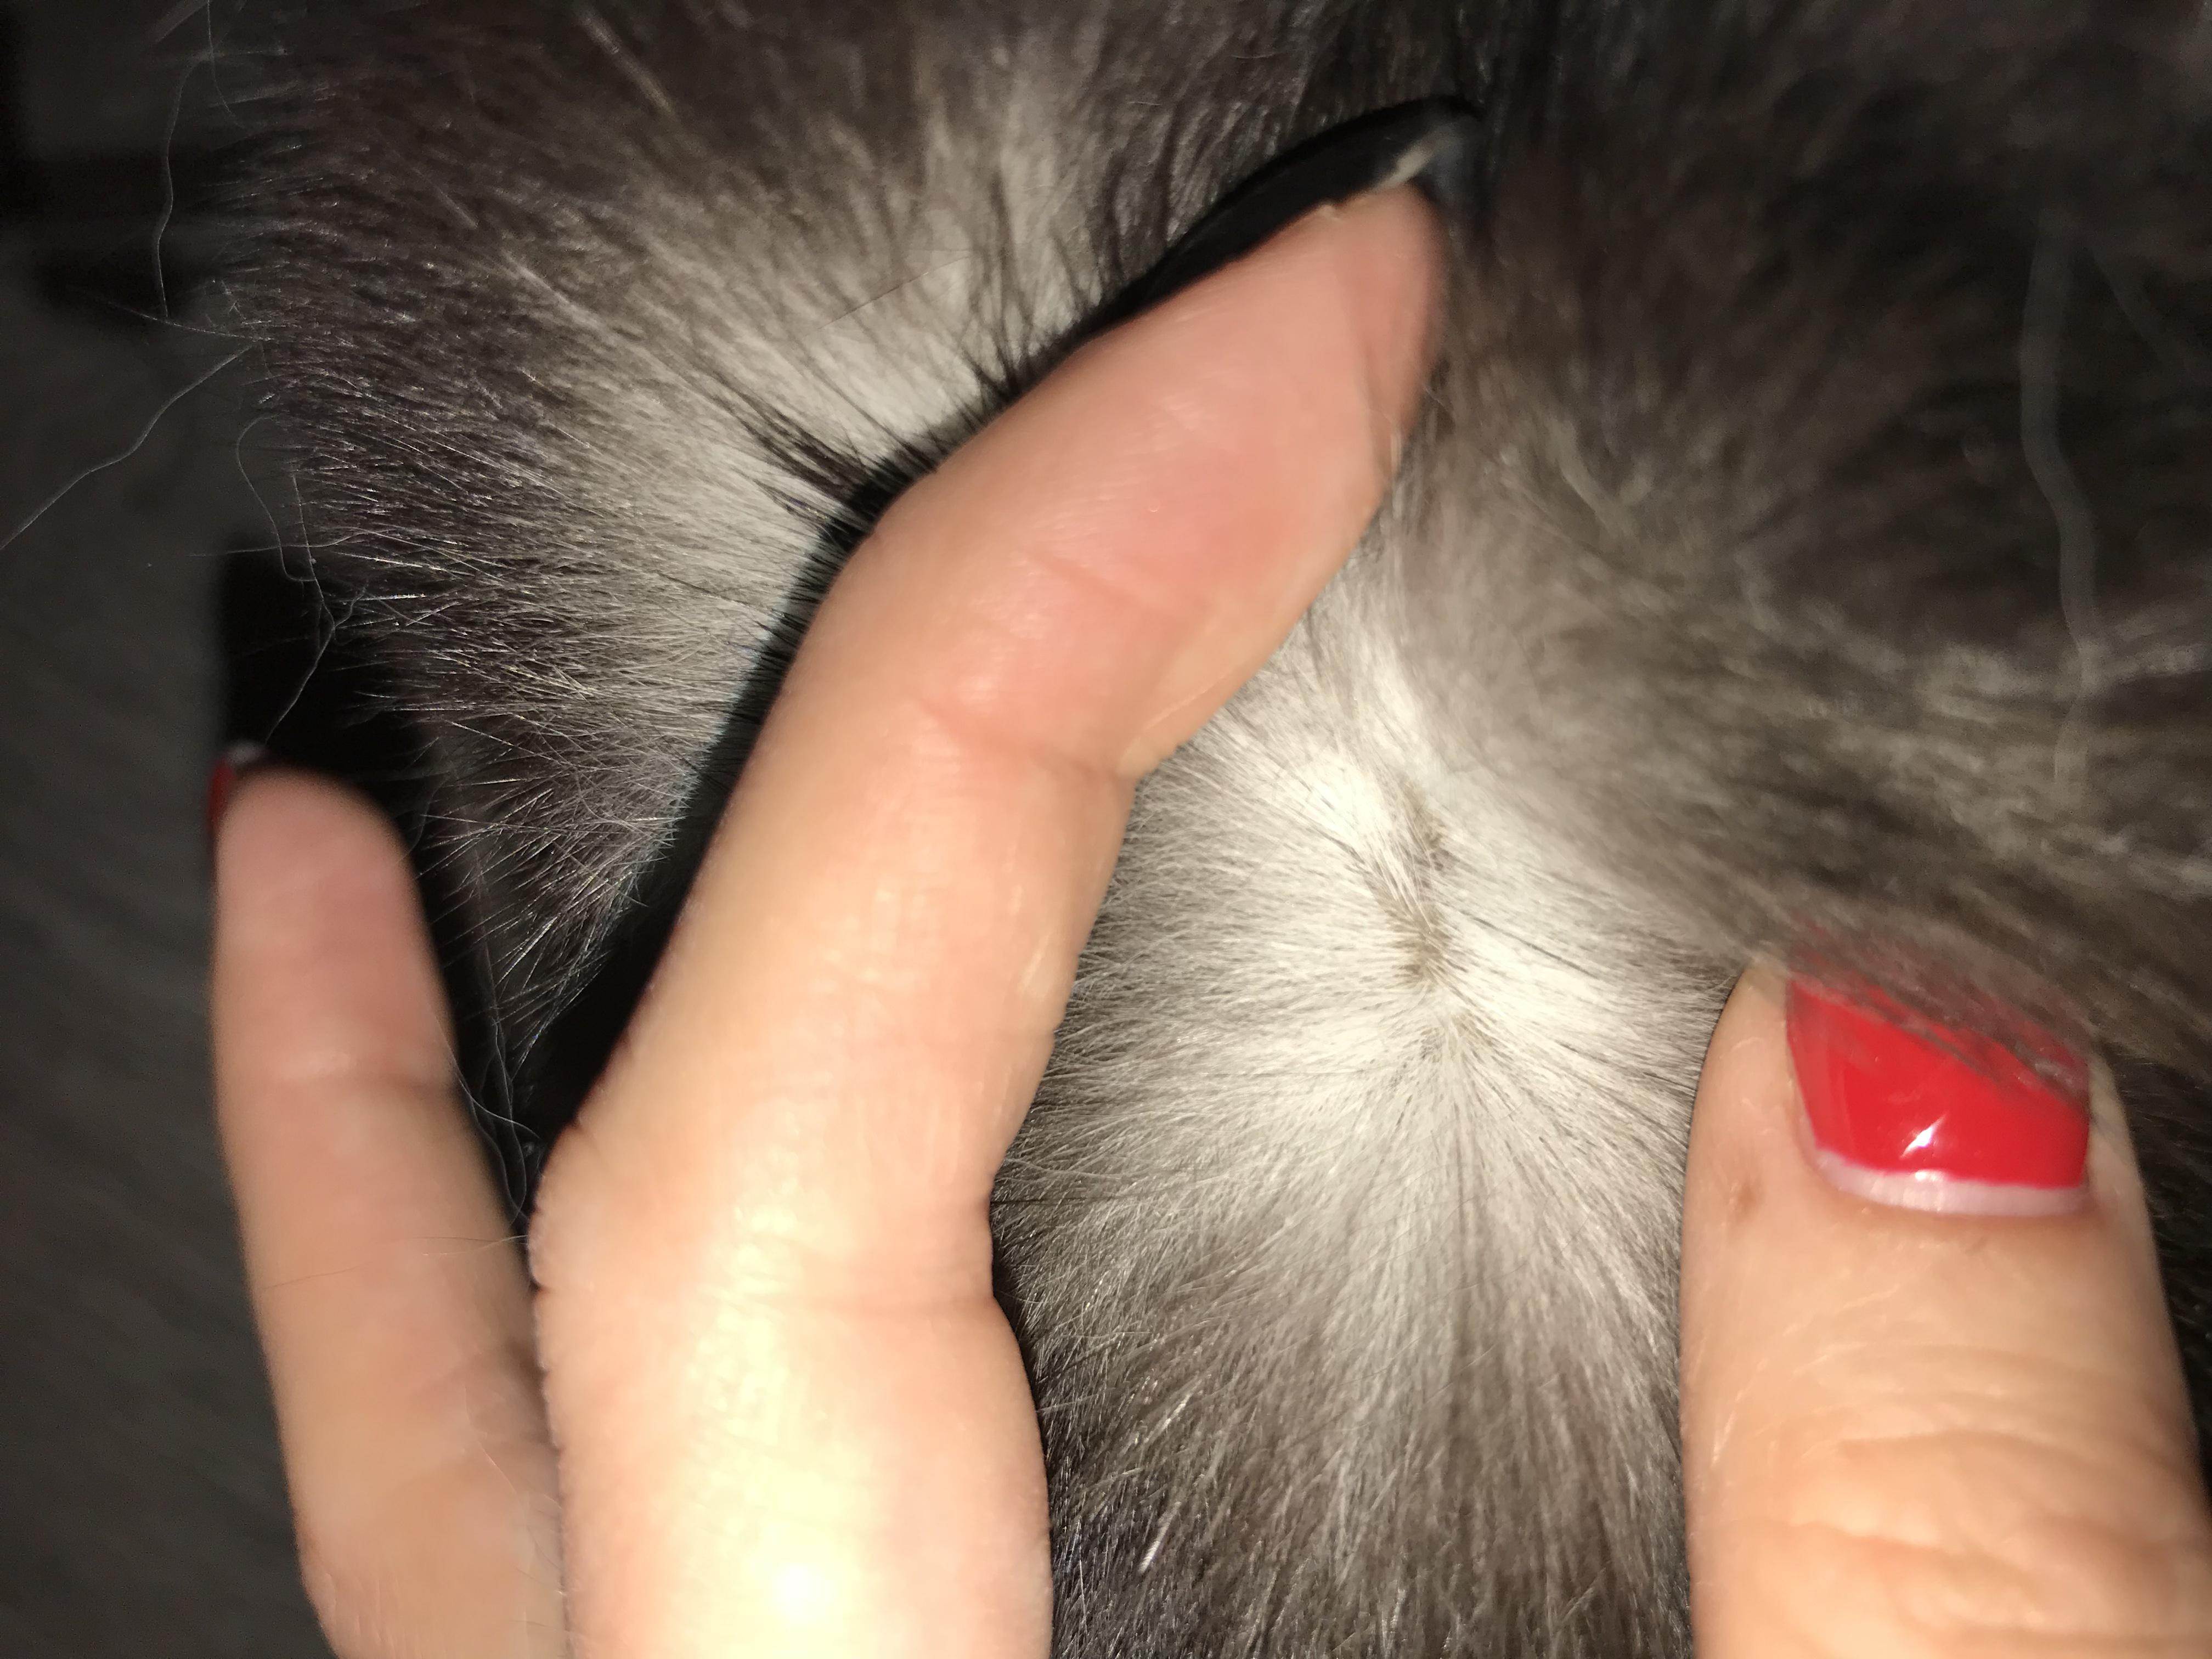 Болячки у кошек: причины и лечение